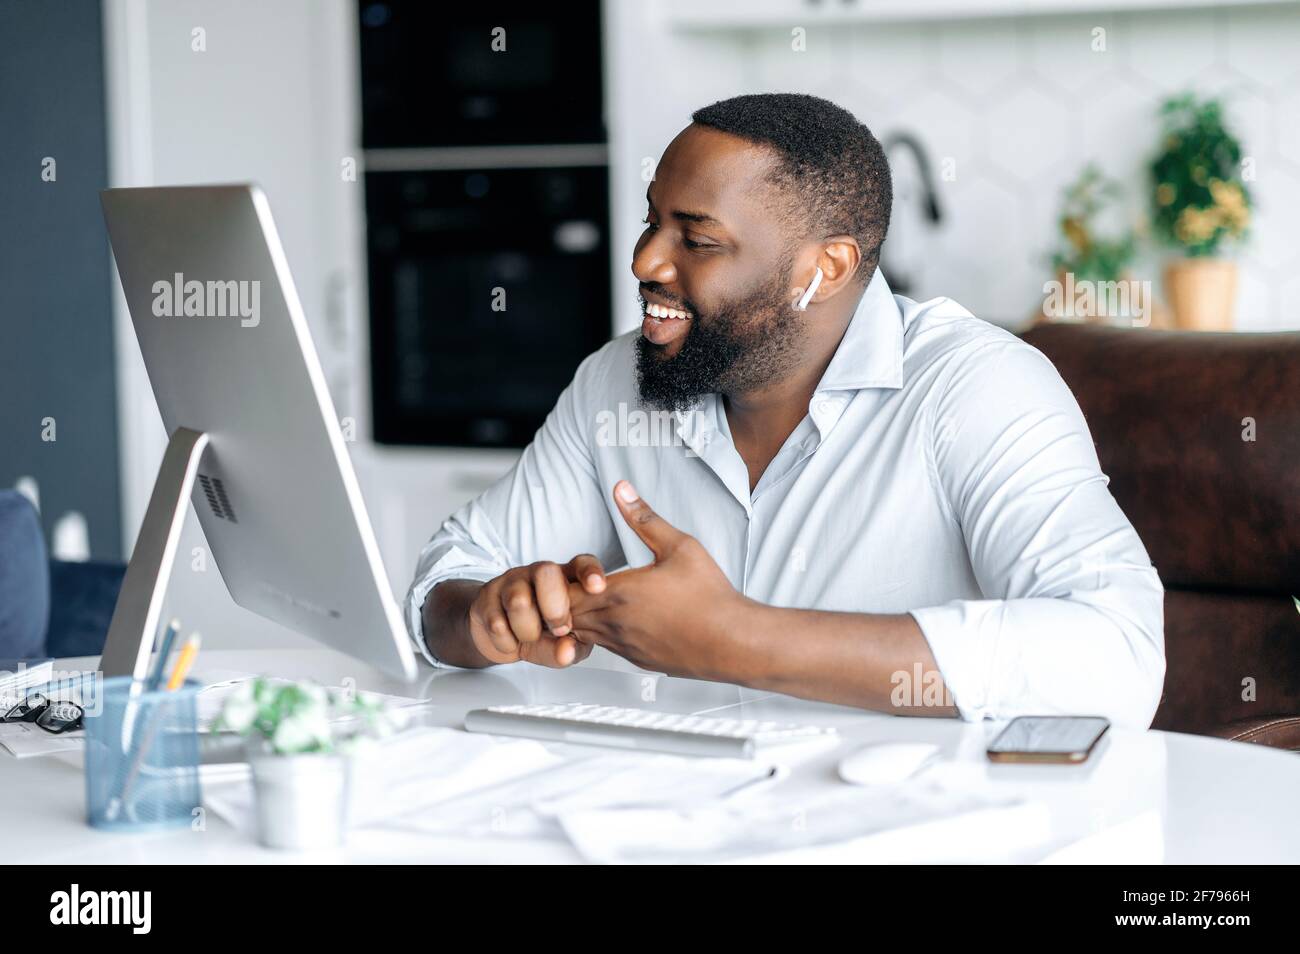 Freudig angenehm erfolgreicher afroamerikanischer Mann, Anwalt oder Immobilienmakler, der aus der Ferne am Computer arbeitet, mit Kollegen oder Kunden per Videoanruf spricht, verwendet schnurloses Headset, lächelnd freundlich Stockfoto